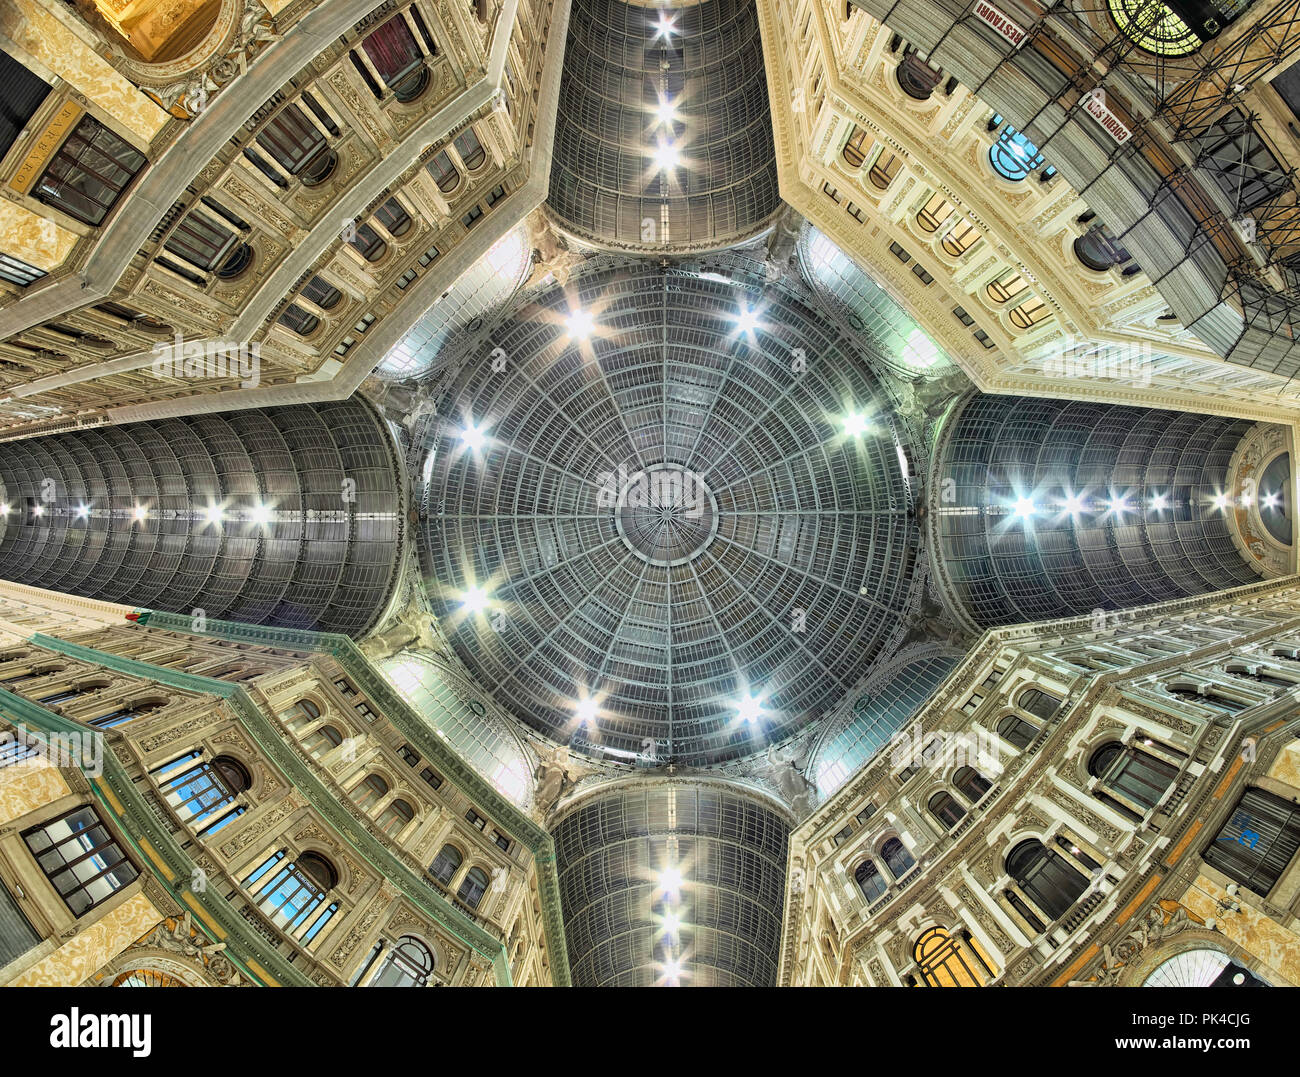 Detalles de la cúpula de cristal de la Galleria Umberto I, tiendas públicas y galería de arte en Nápoles, Italia Foto de stock